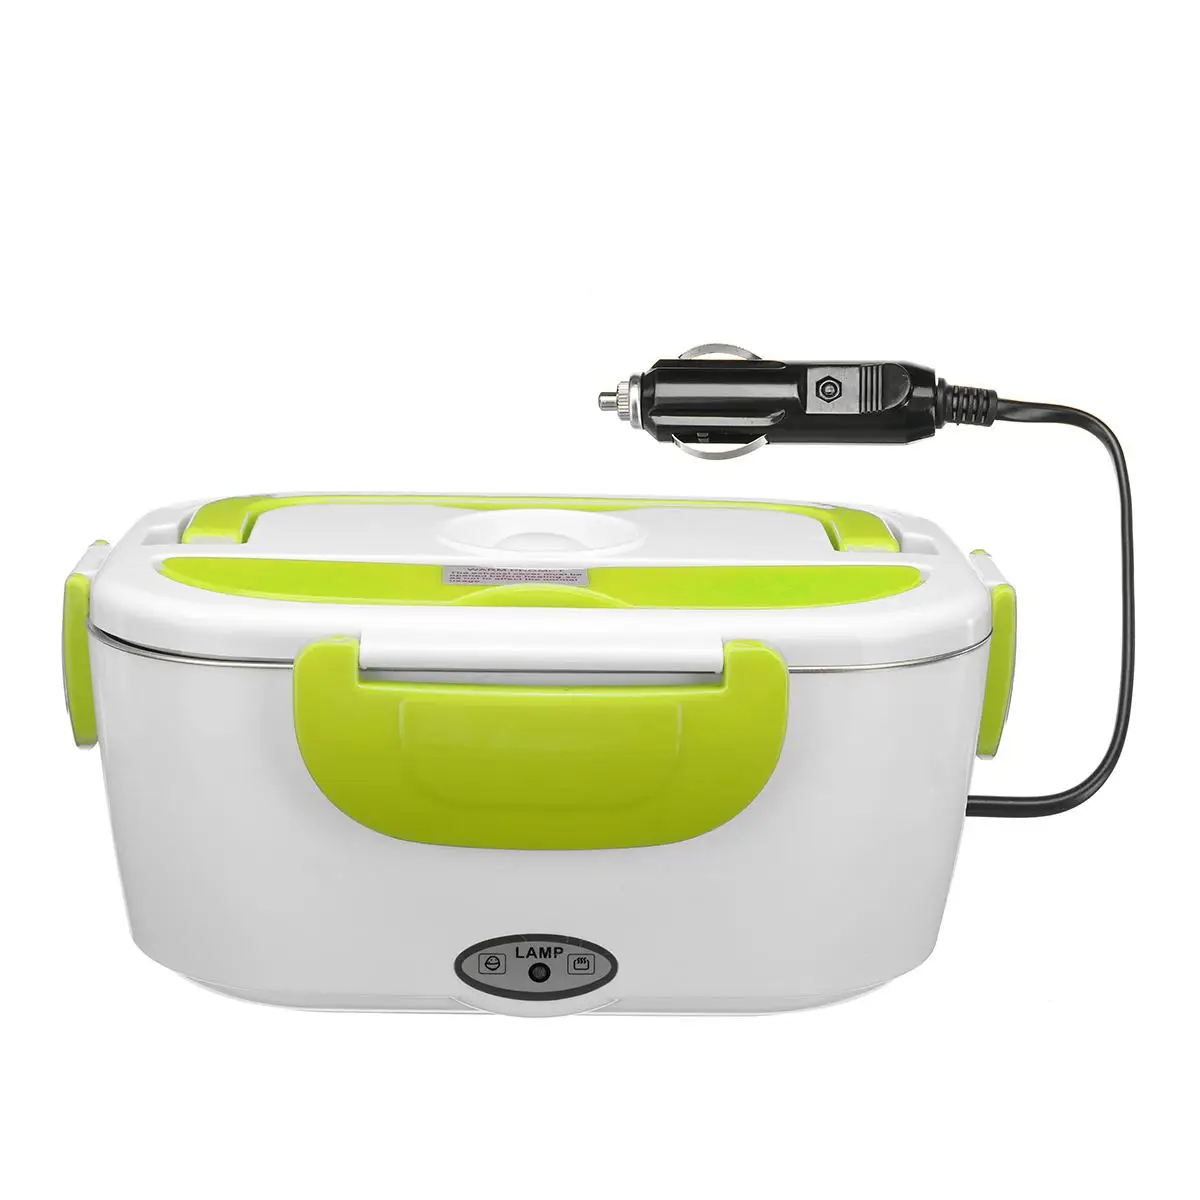 12 В 1.5L автомобиль портативный Электрический нагревательный Ланч-бокс для детей приготовление еды Bento box с подогревом контейнеры для еды с теплоизоляцией Lunchbox для еды - Цвет: Зеленый